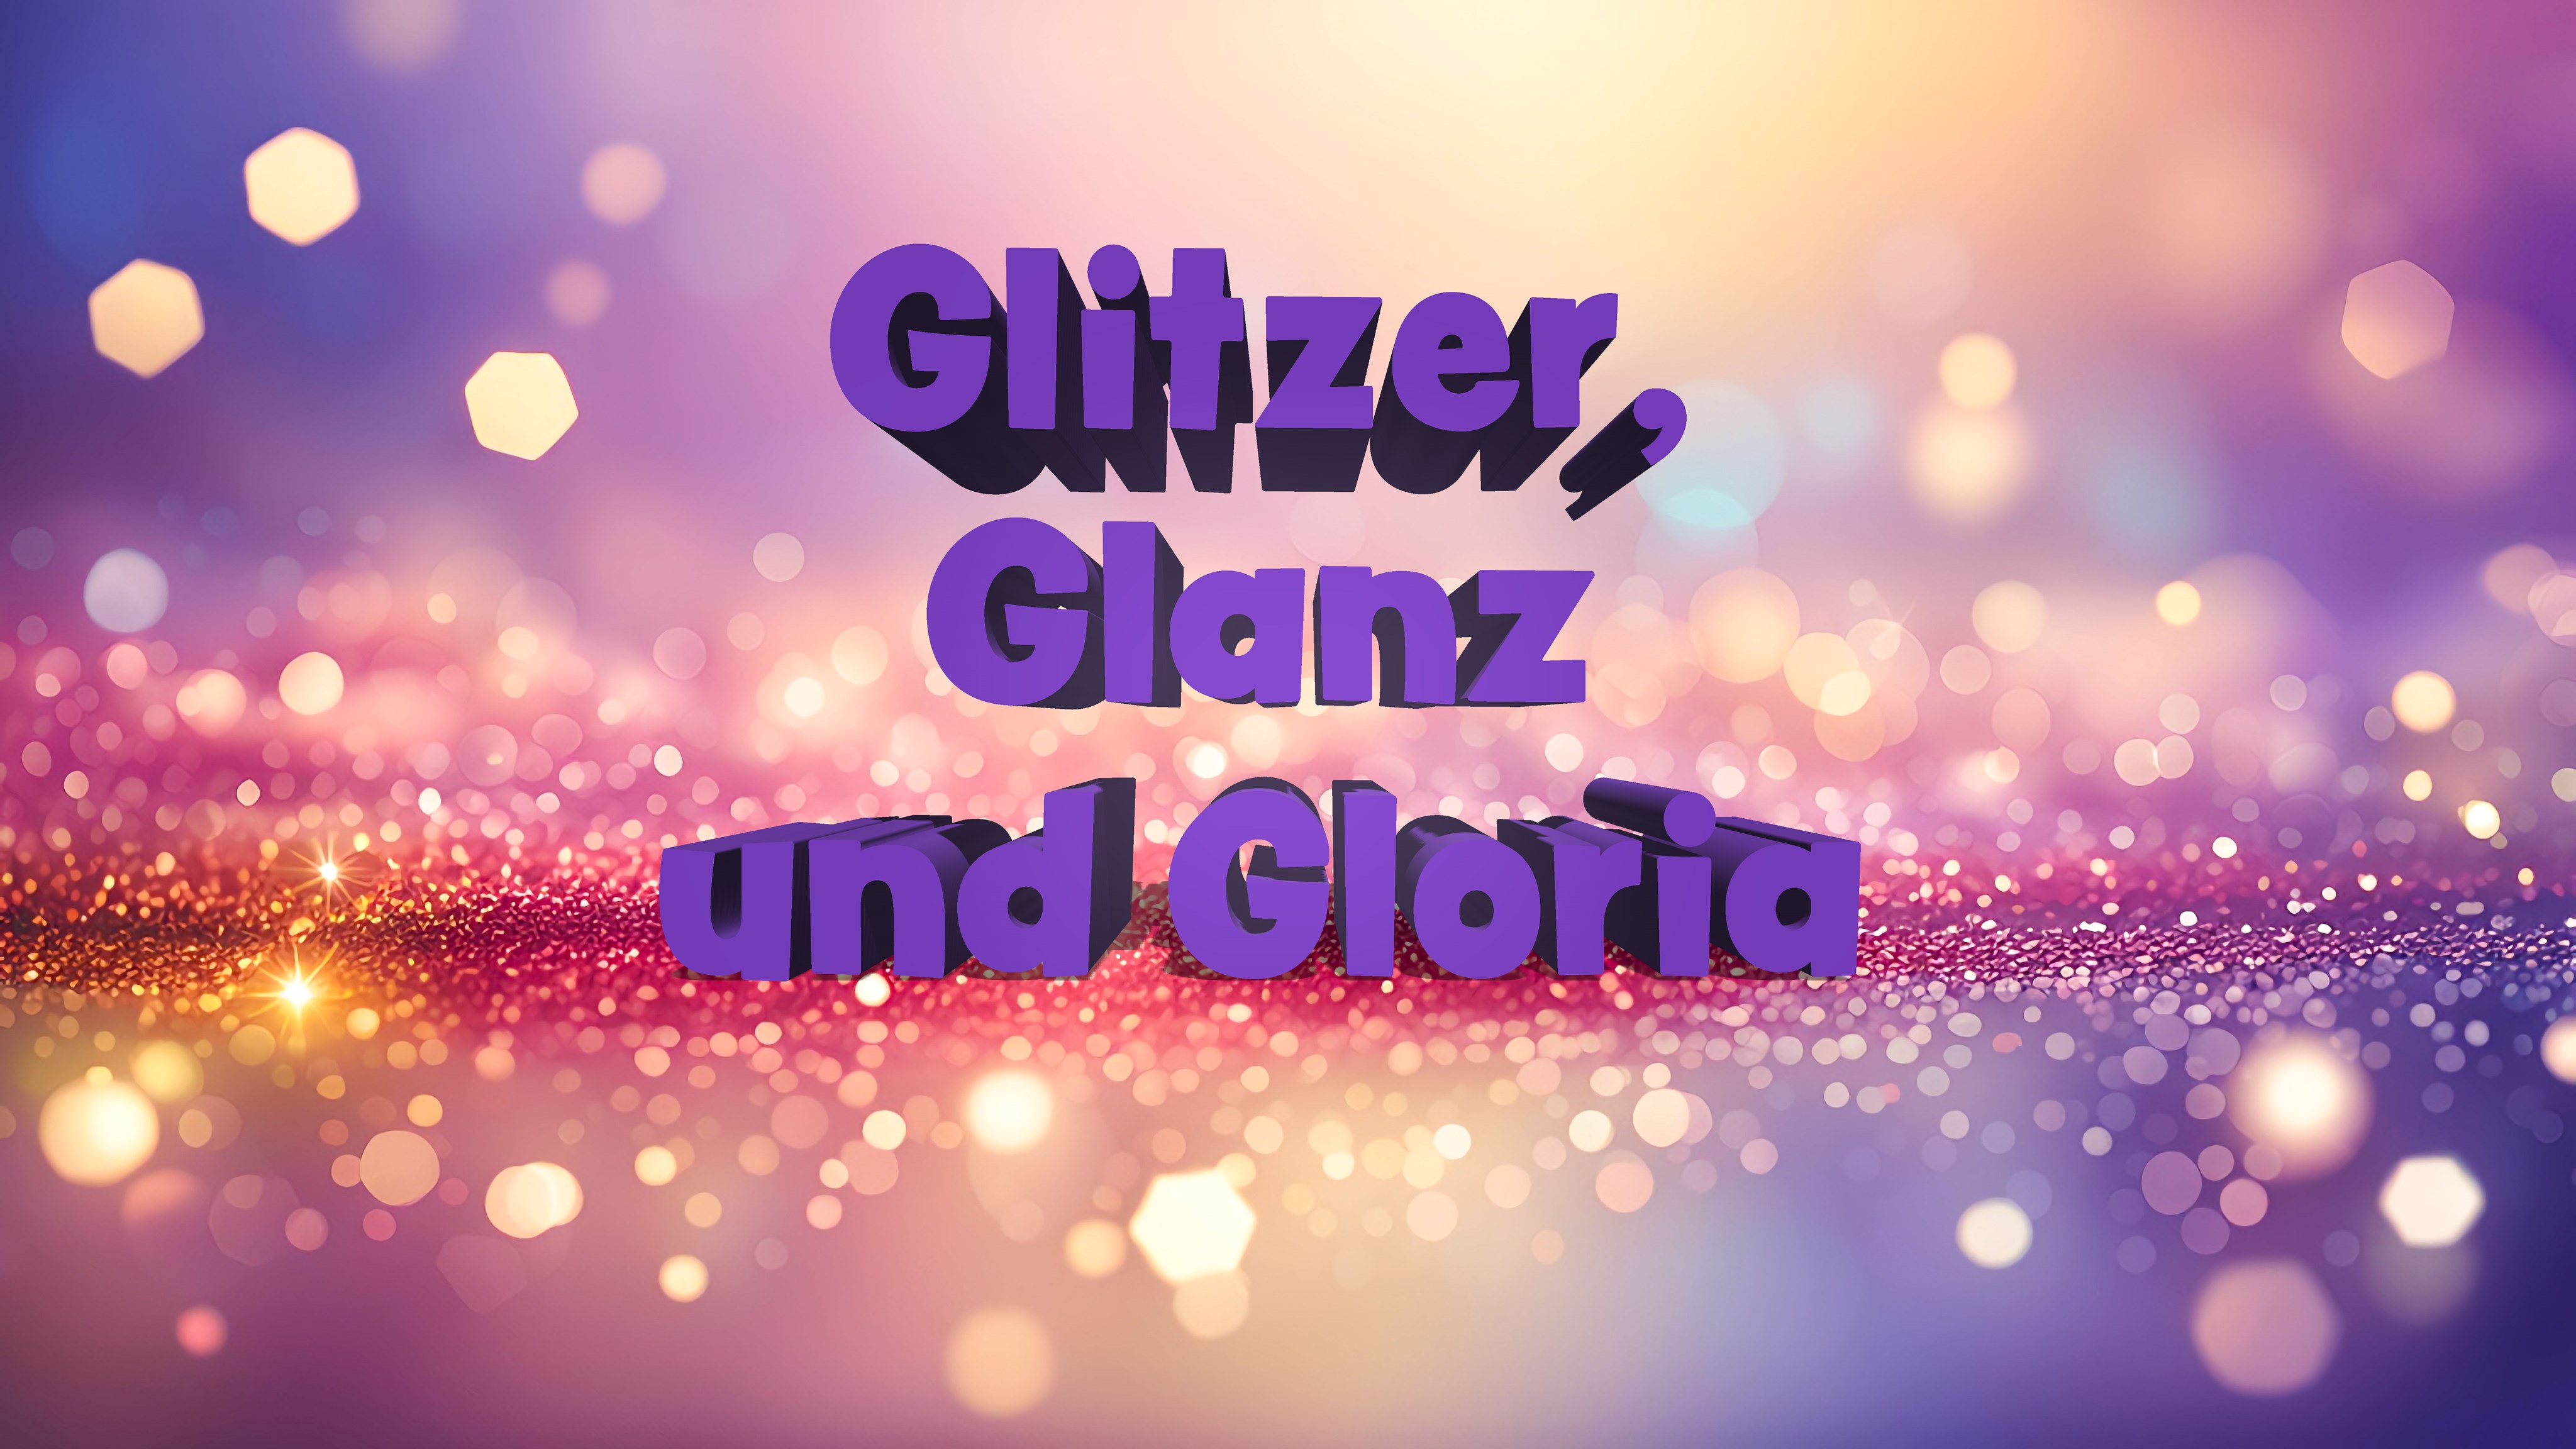 Sommerfest: Glitzer, Glanz und Gloria